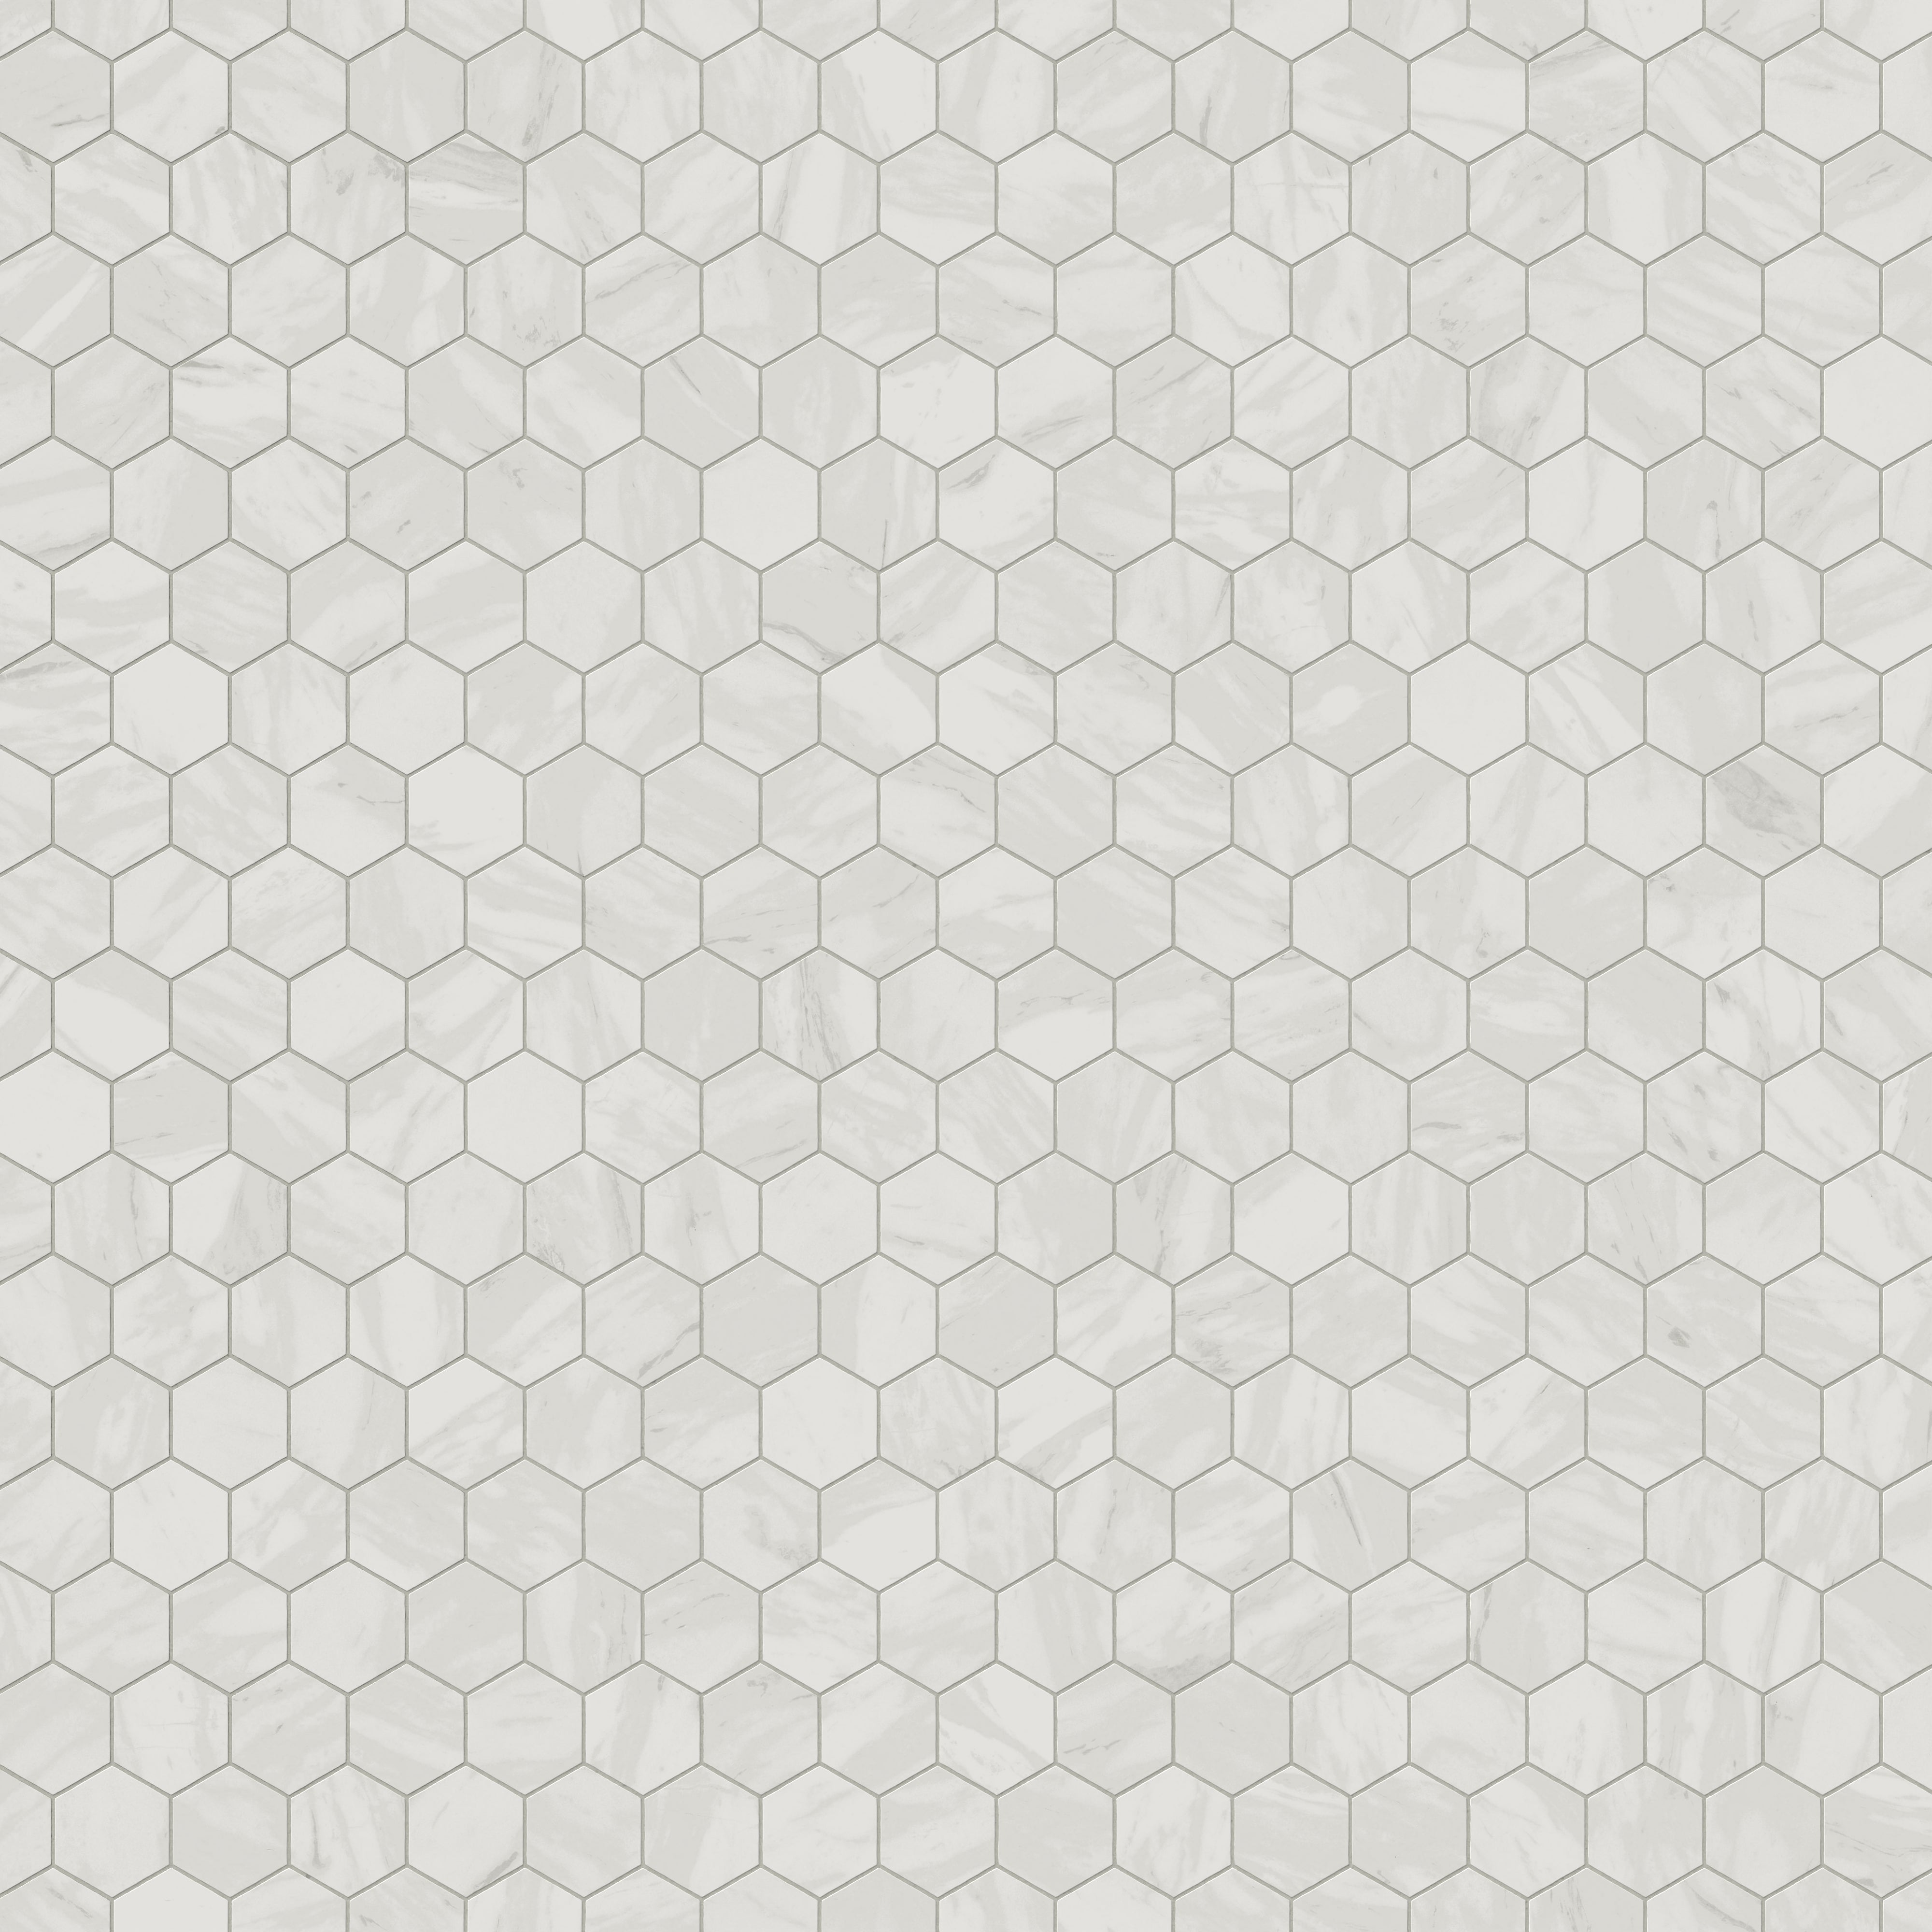 Blair 3x3 Polished Porcelain Hexagon Mosaic Tile in Volakas White